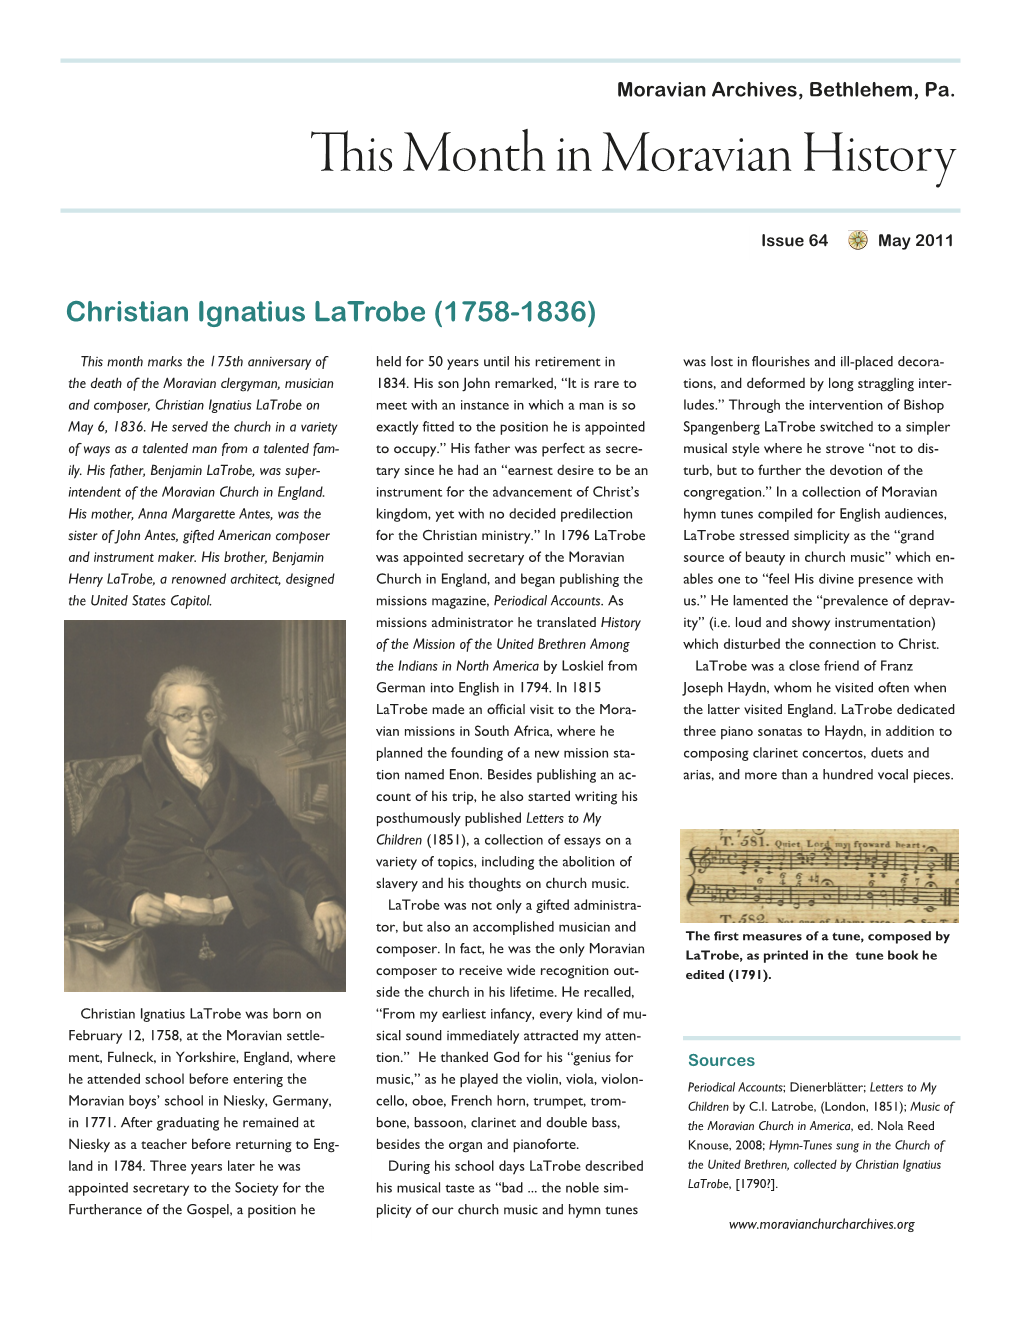 Christian Ignatius Latrobe (1758-1836)